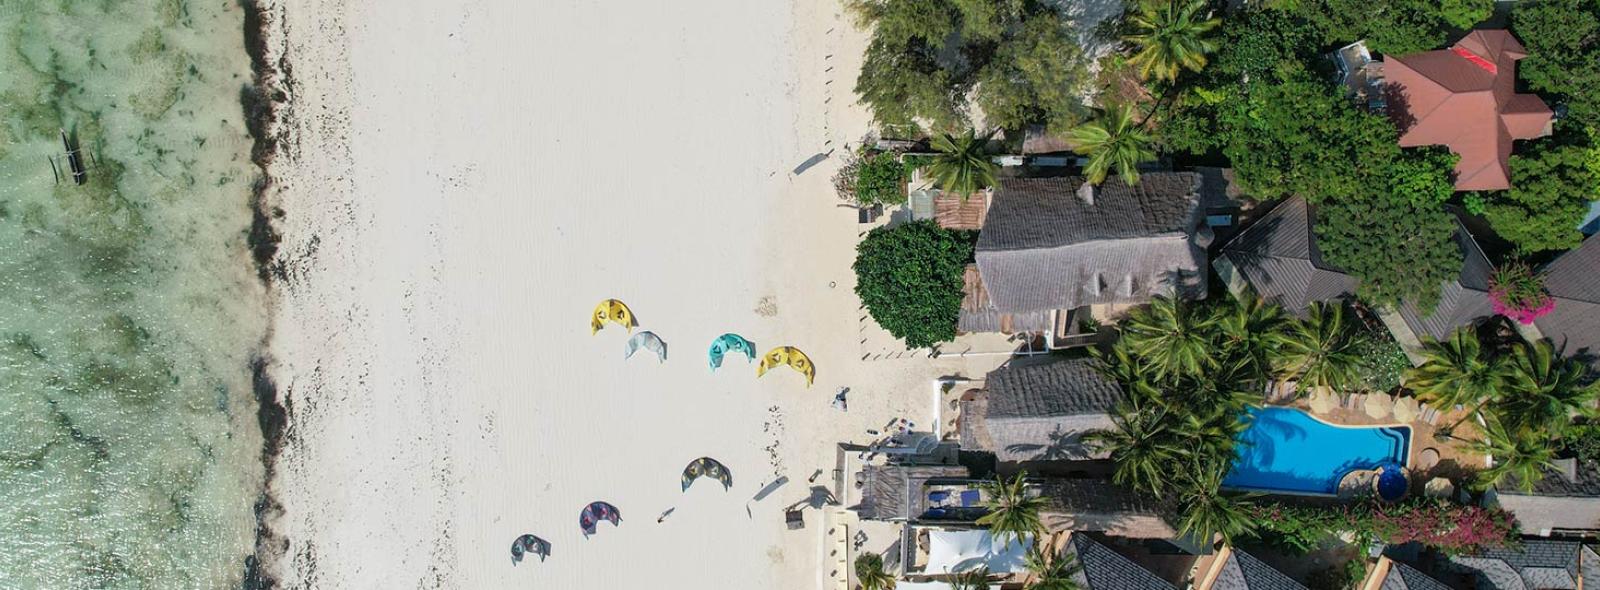 vue aérienne de la plage de Paje avec des kites